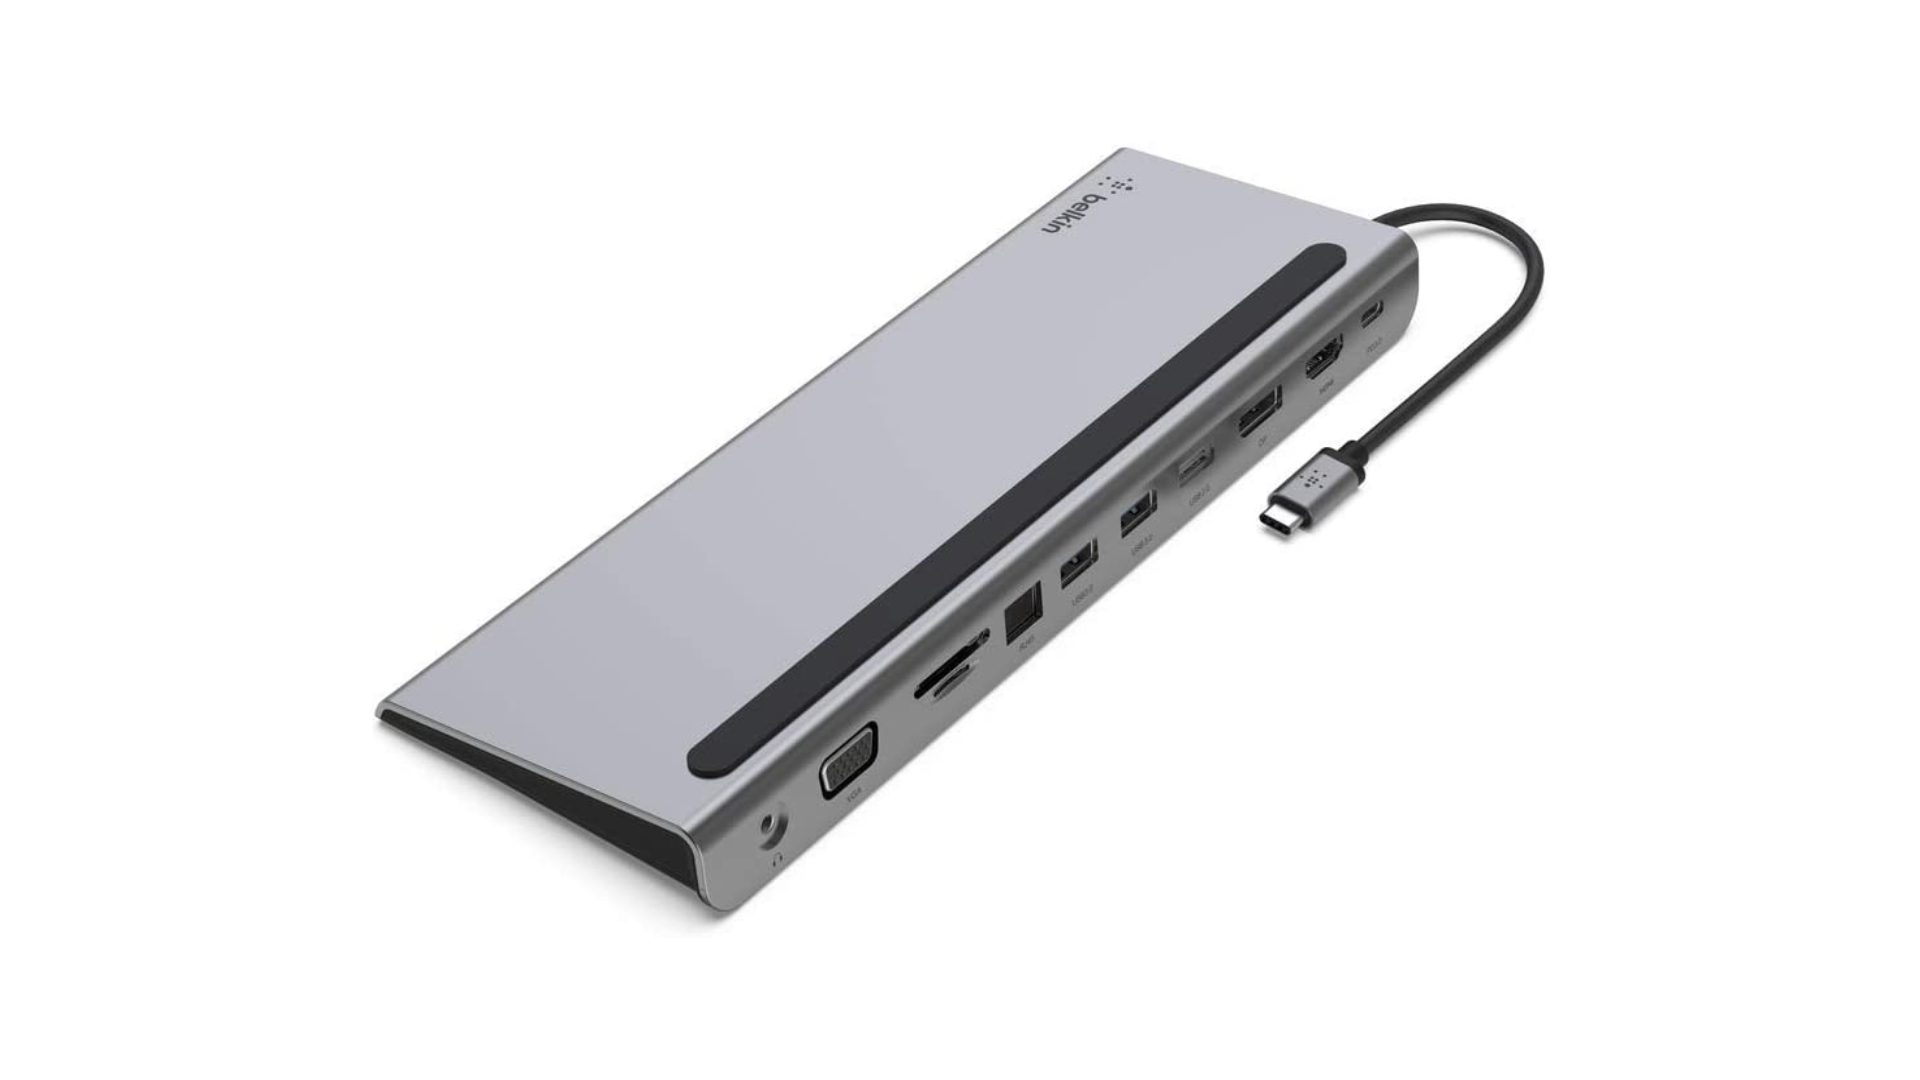 Dermaga Dek Uap Terbaik: Hub USB-C Belkin dengan latar belakang putih